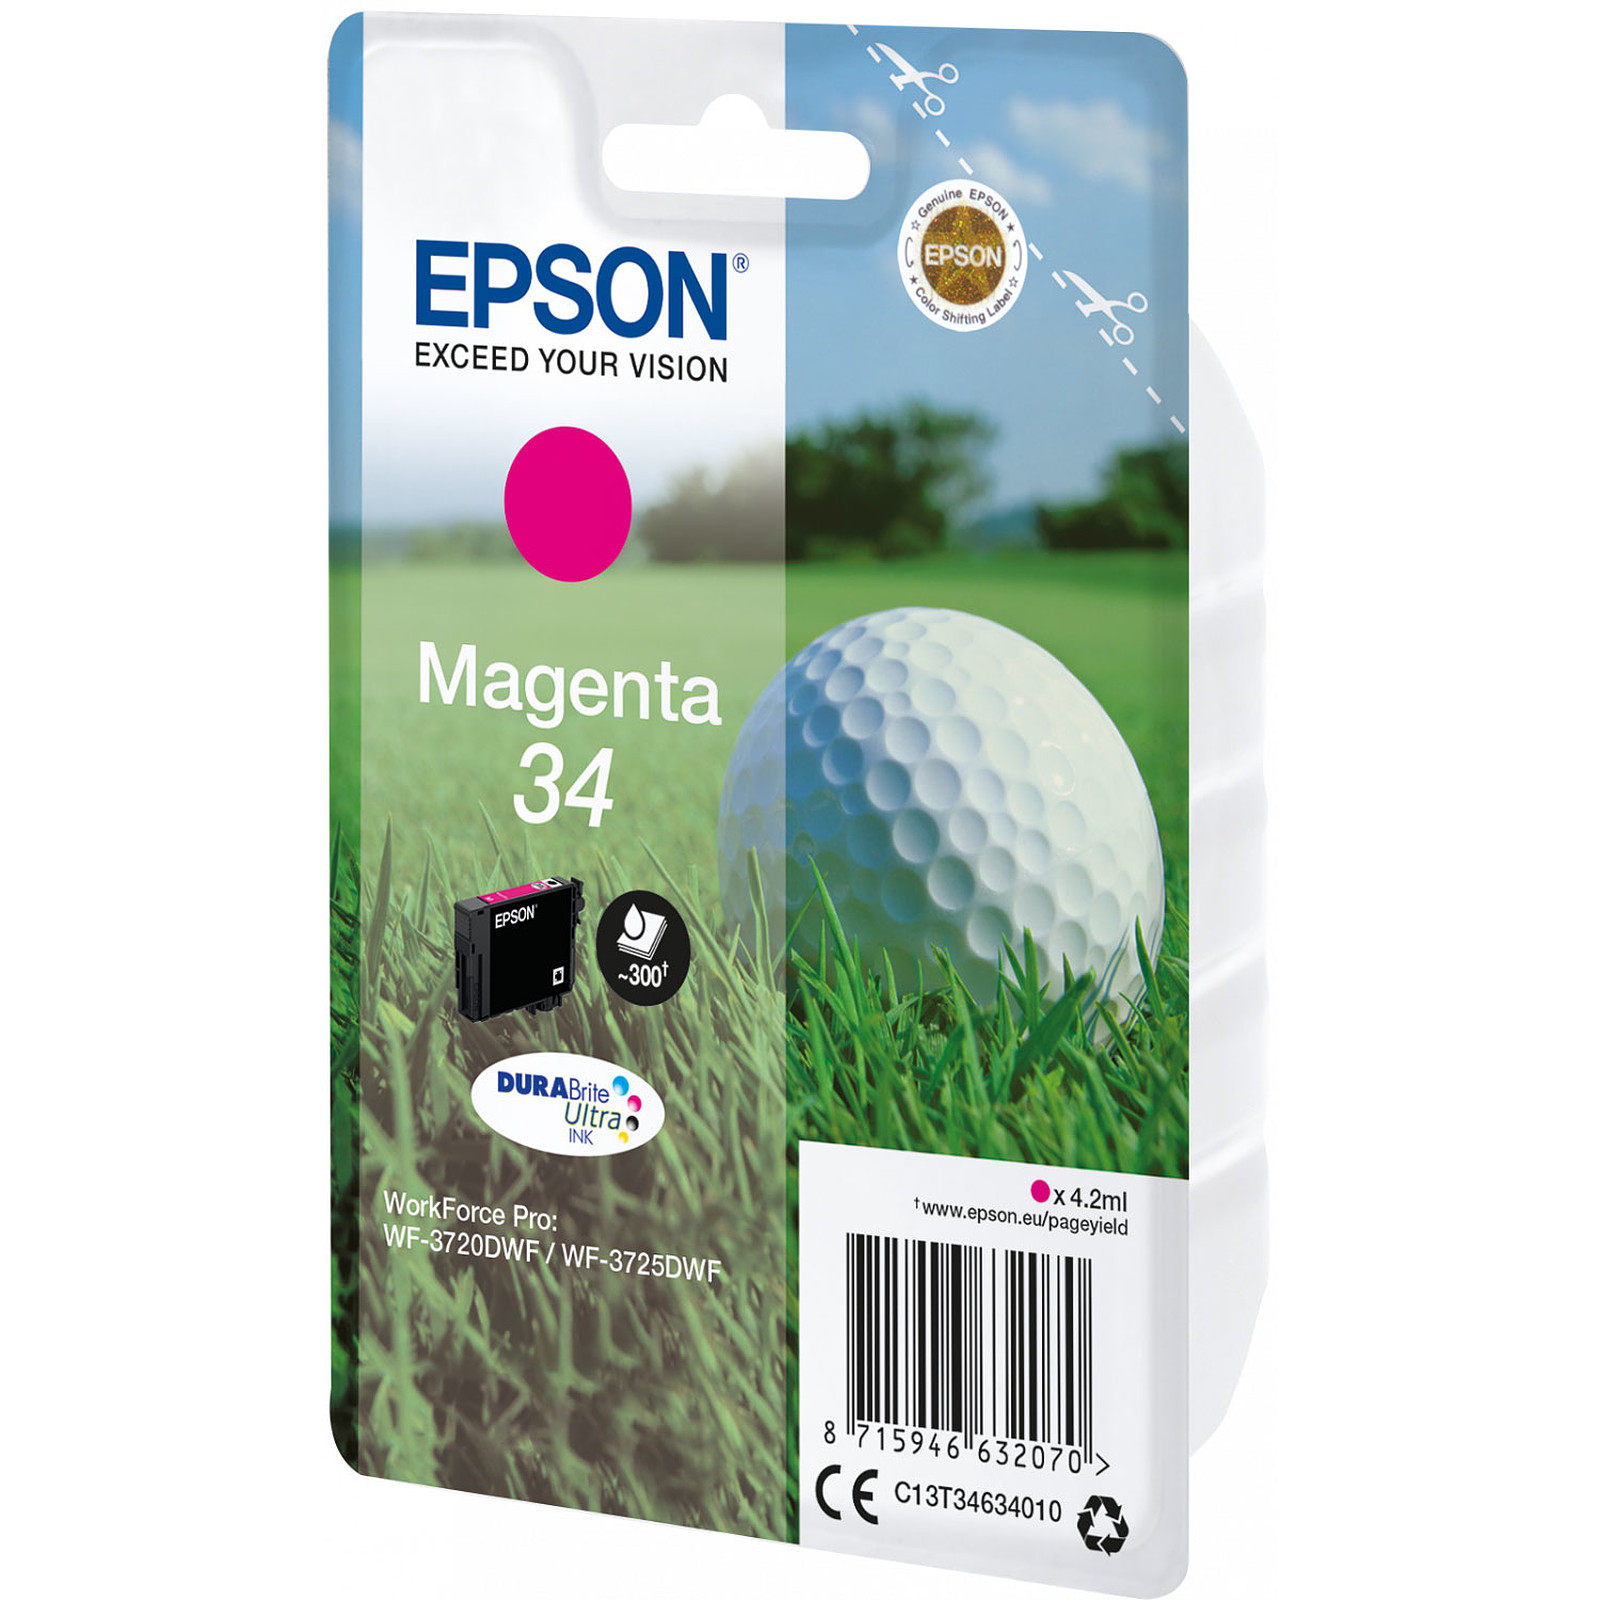 Epson Balle de Golf Magenta 34 - Cartouche imprimante Epson